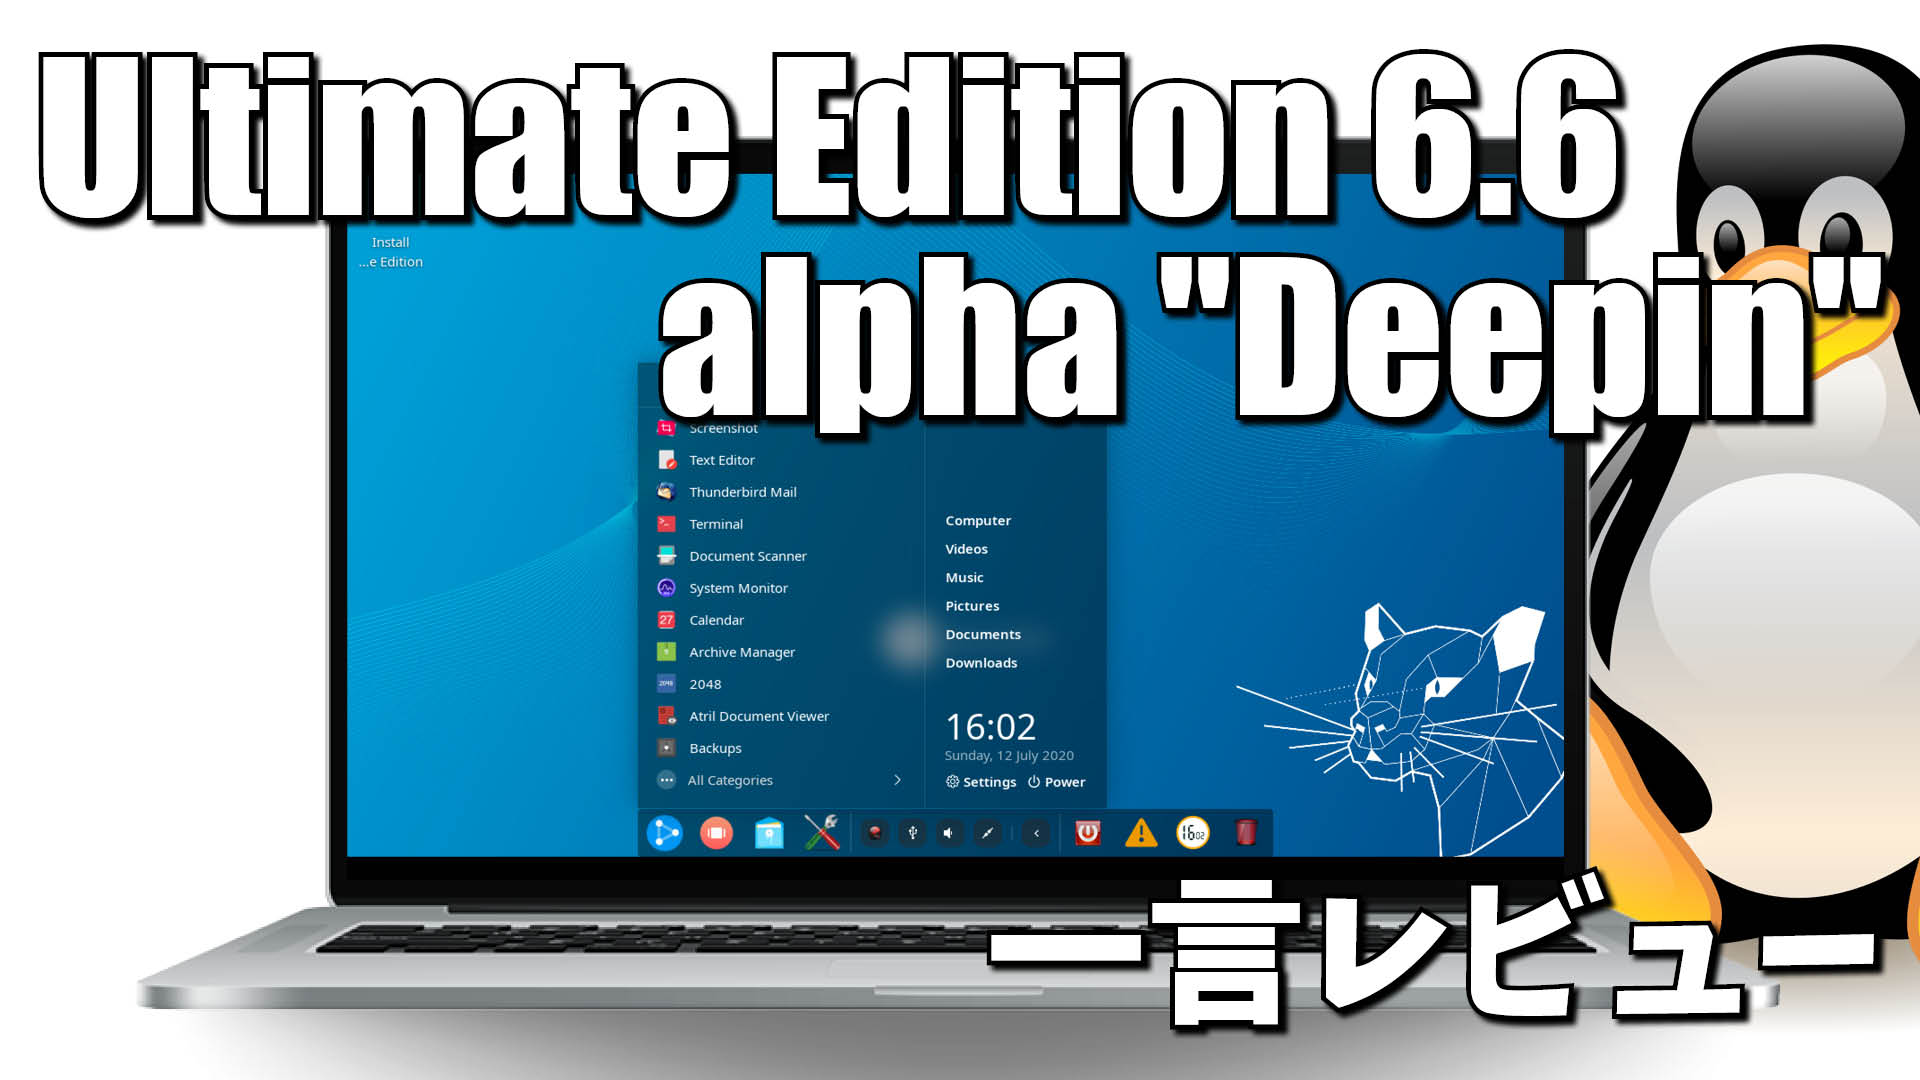 一言レビュー: Ultimate Edition 6.6-alpha "Deepin"